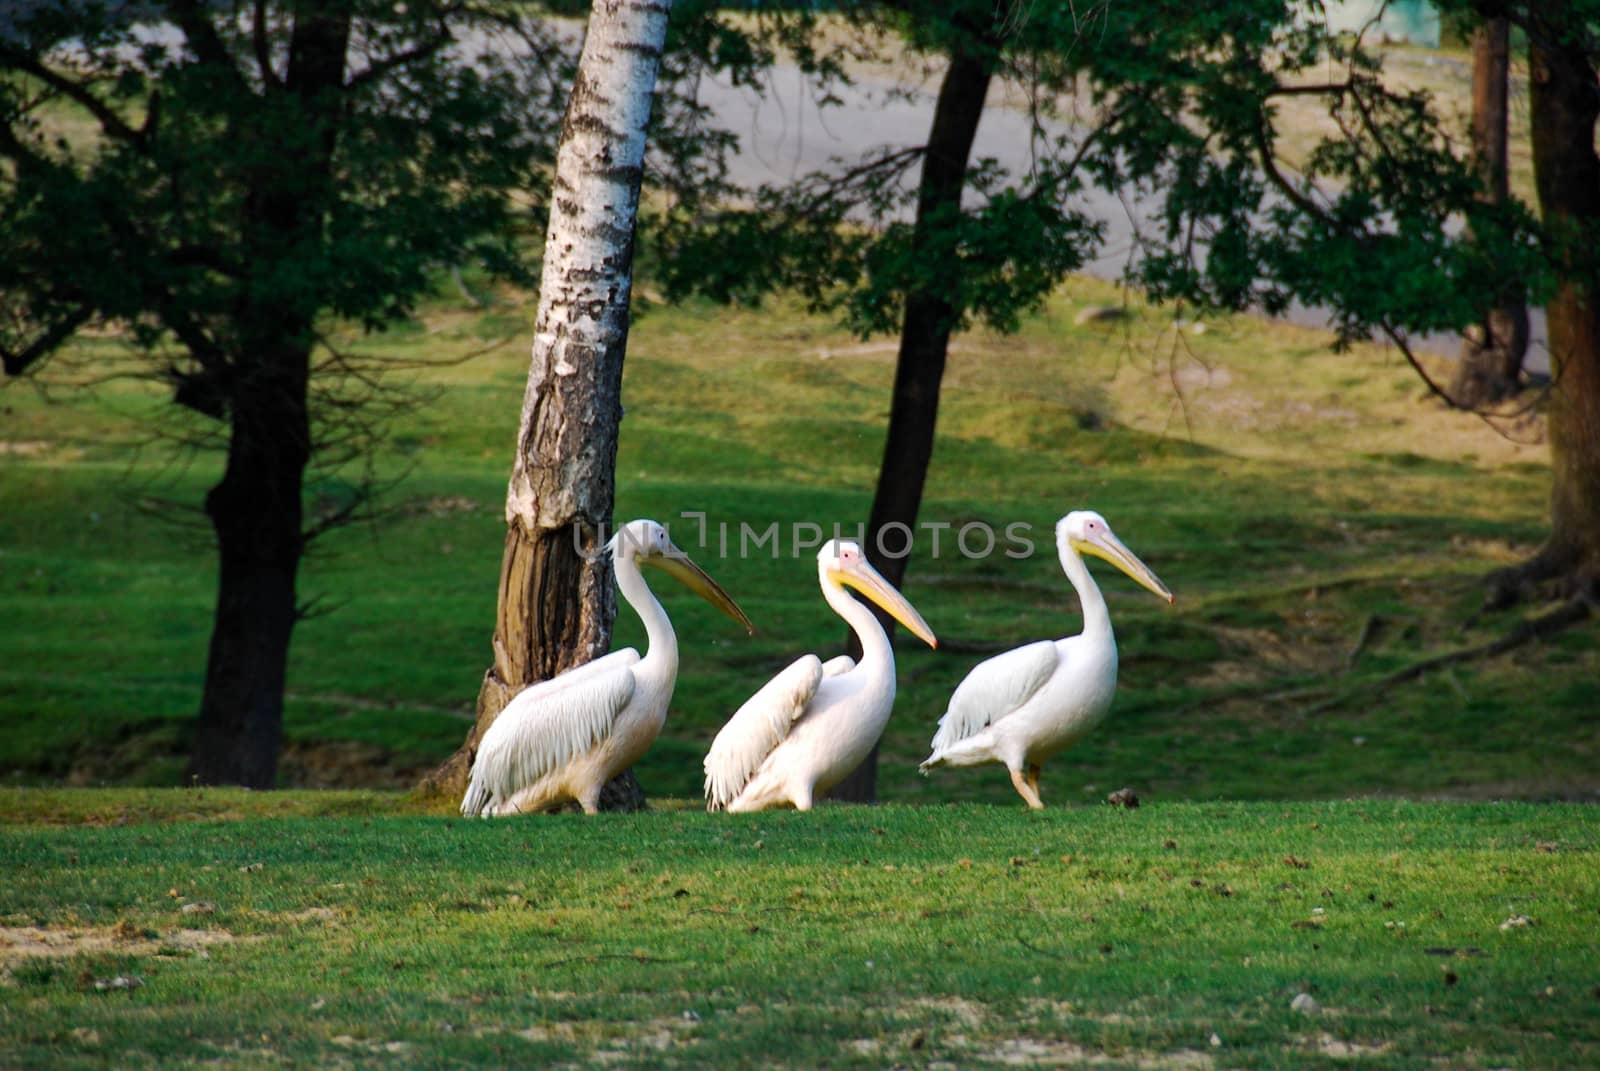 Pelicans in a meadow by cosca